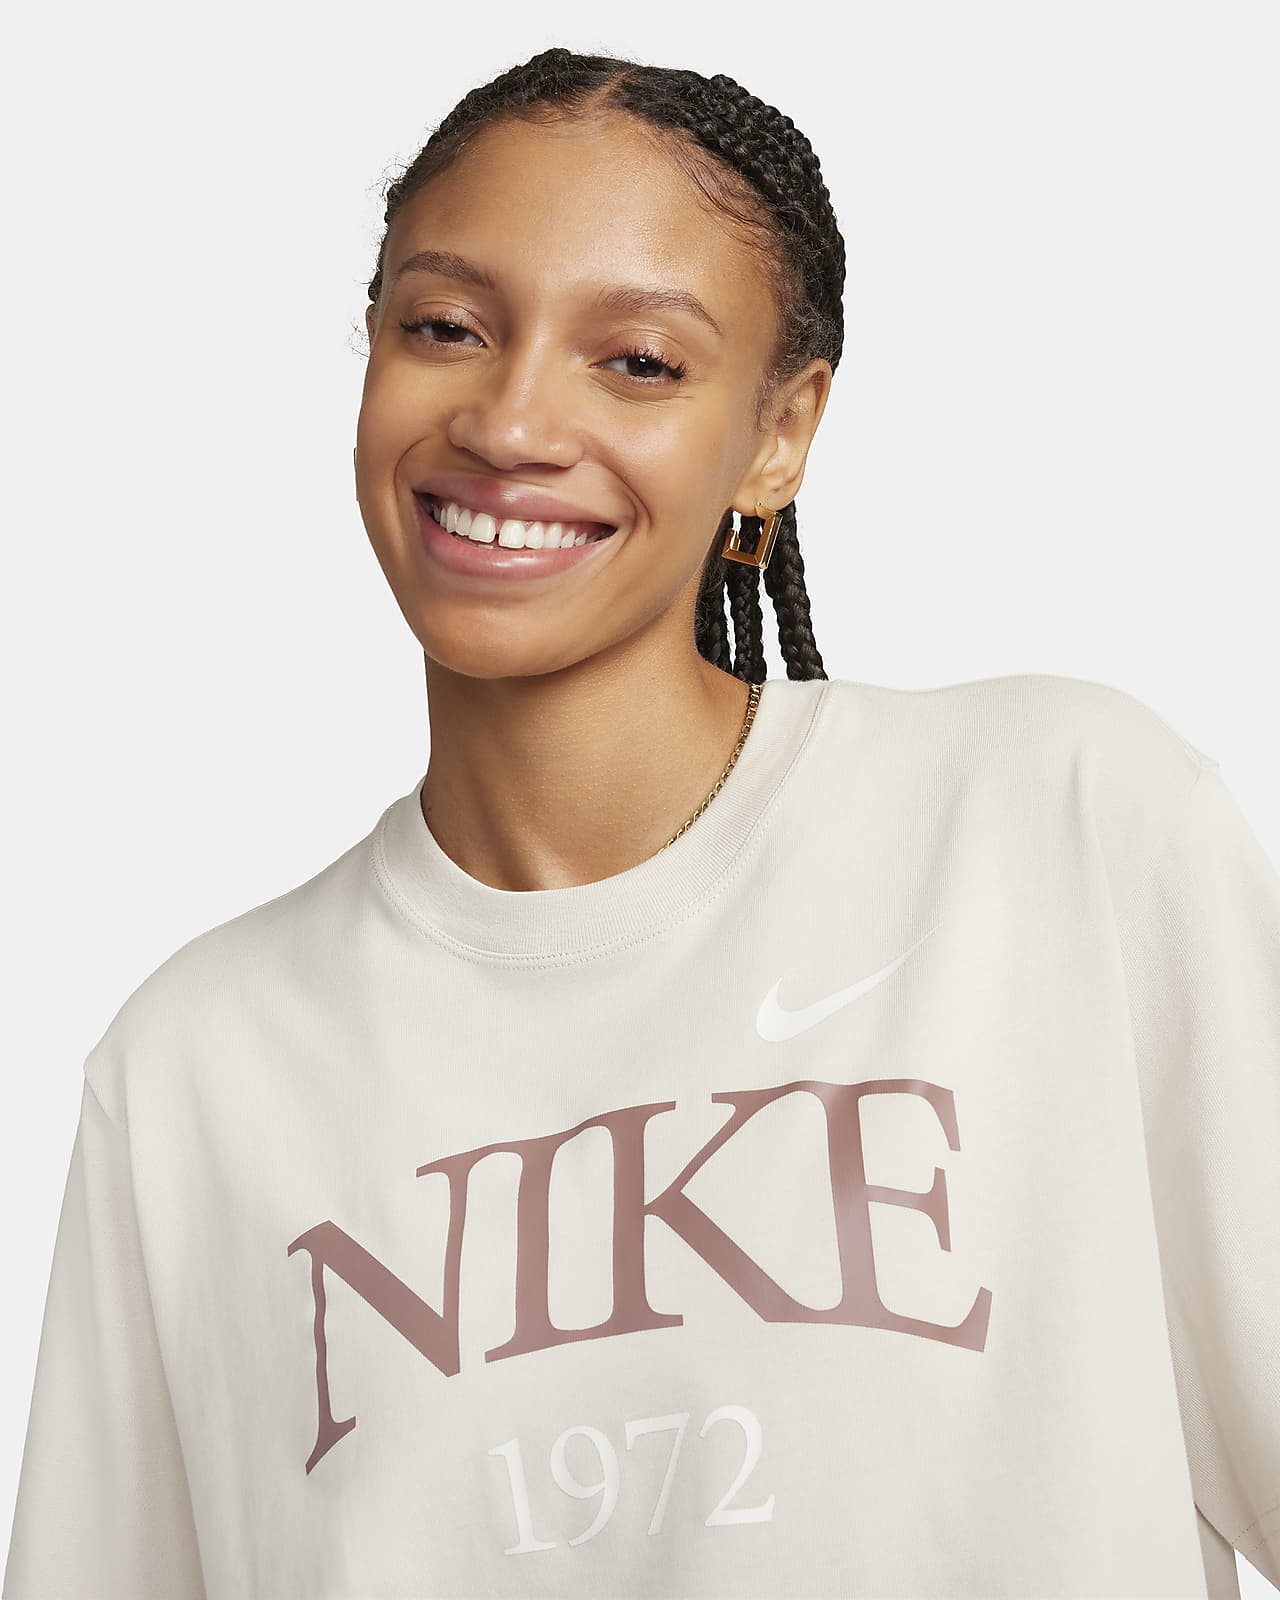 Nike Sportswear Classic Women's T-Shirt.